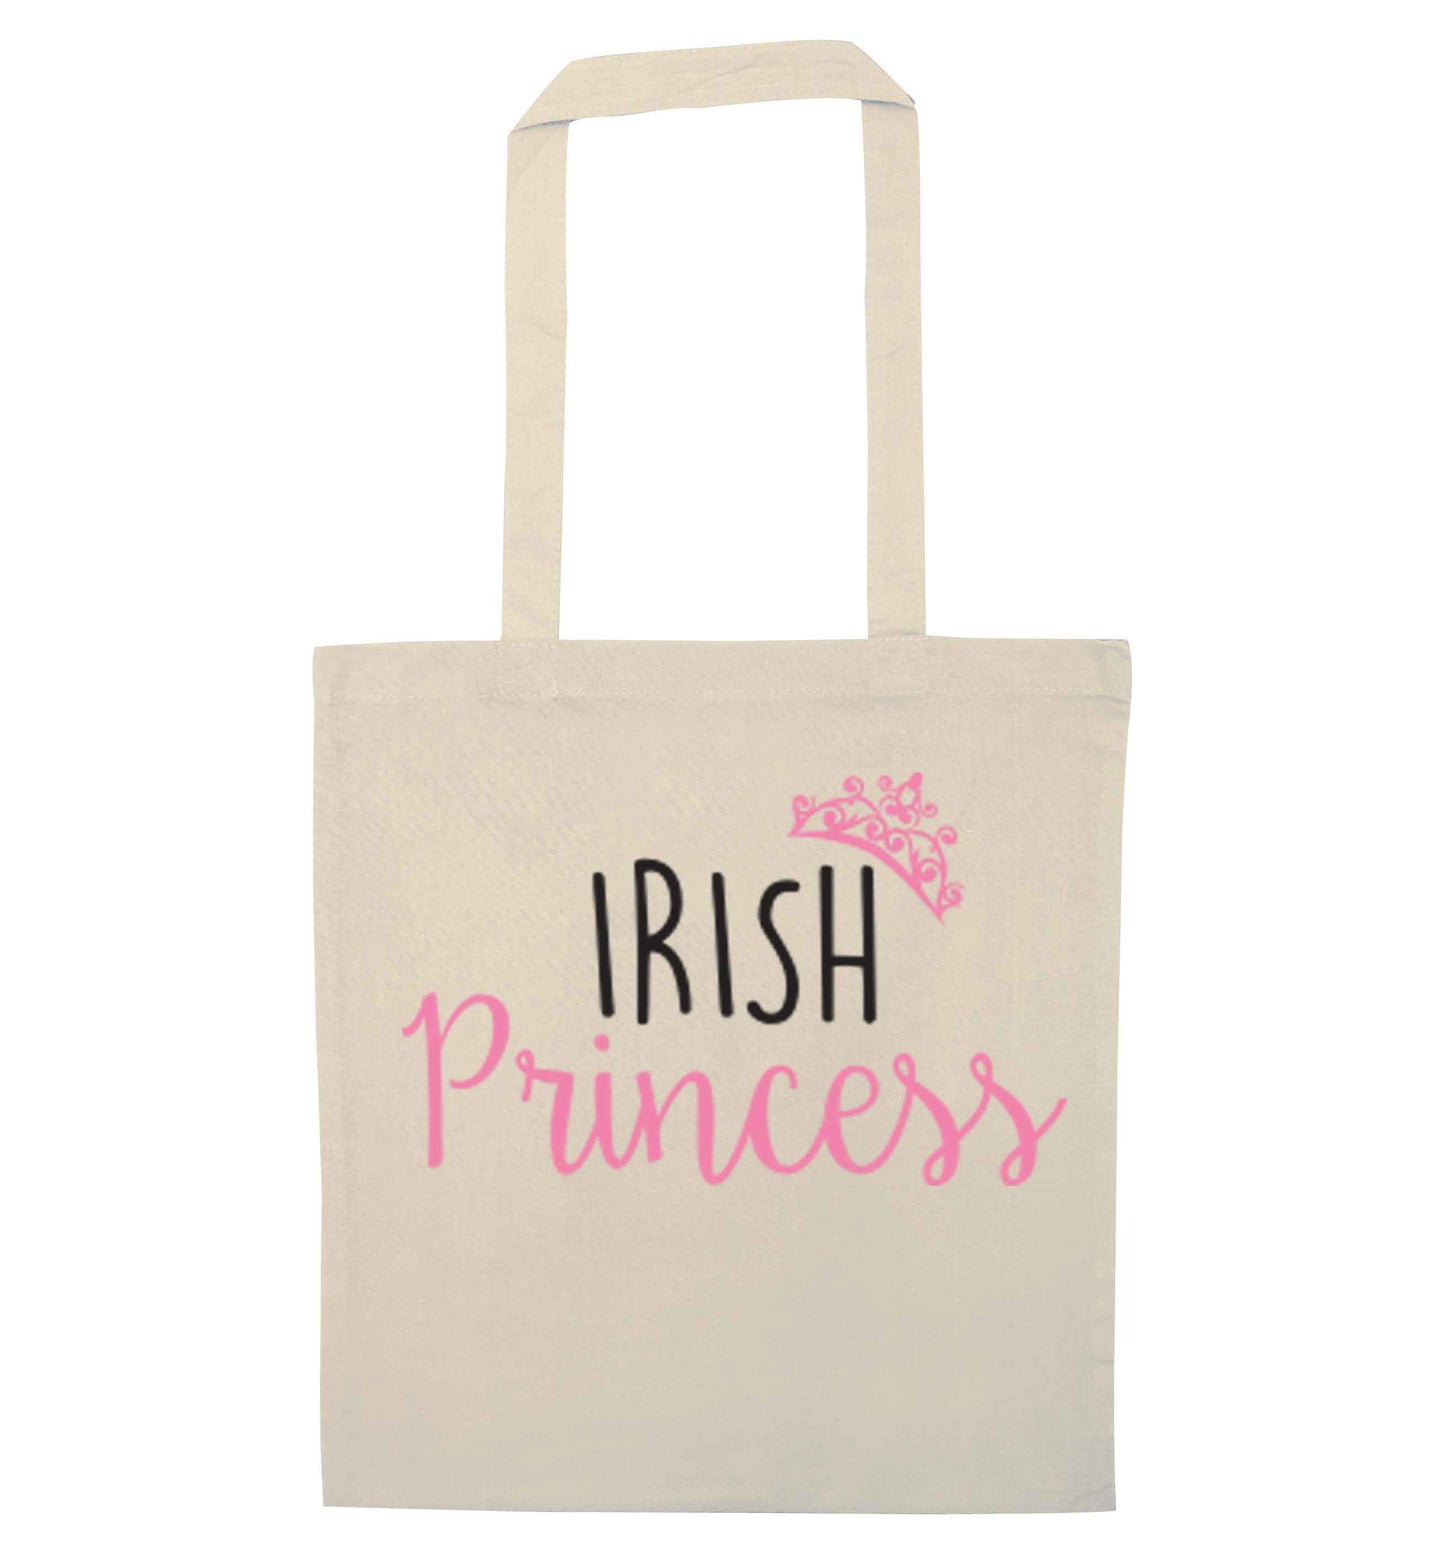 Irish princess natural tote bag